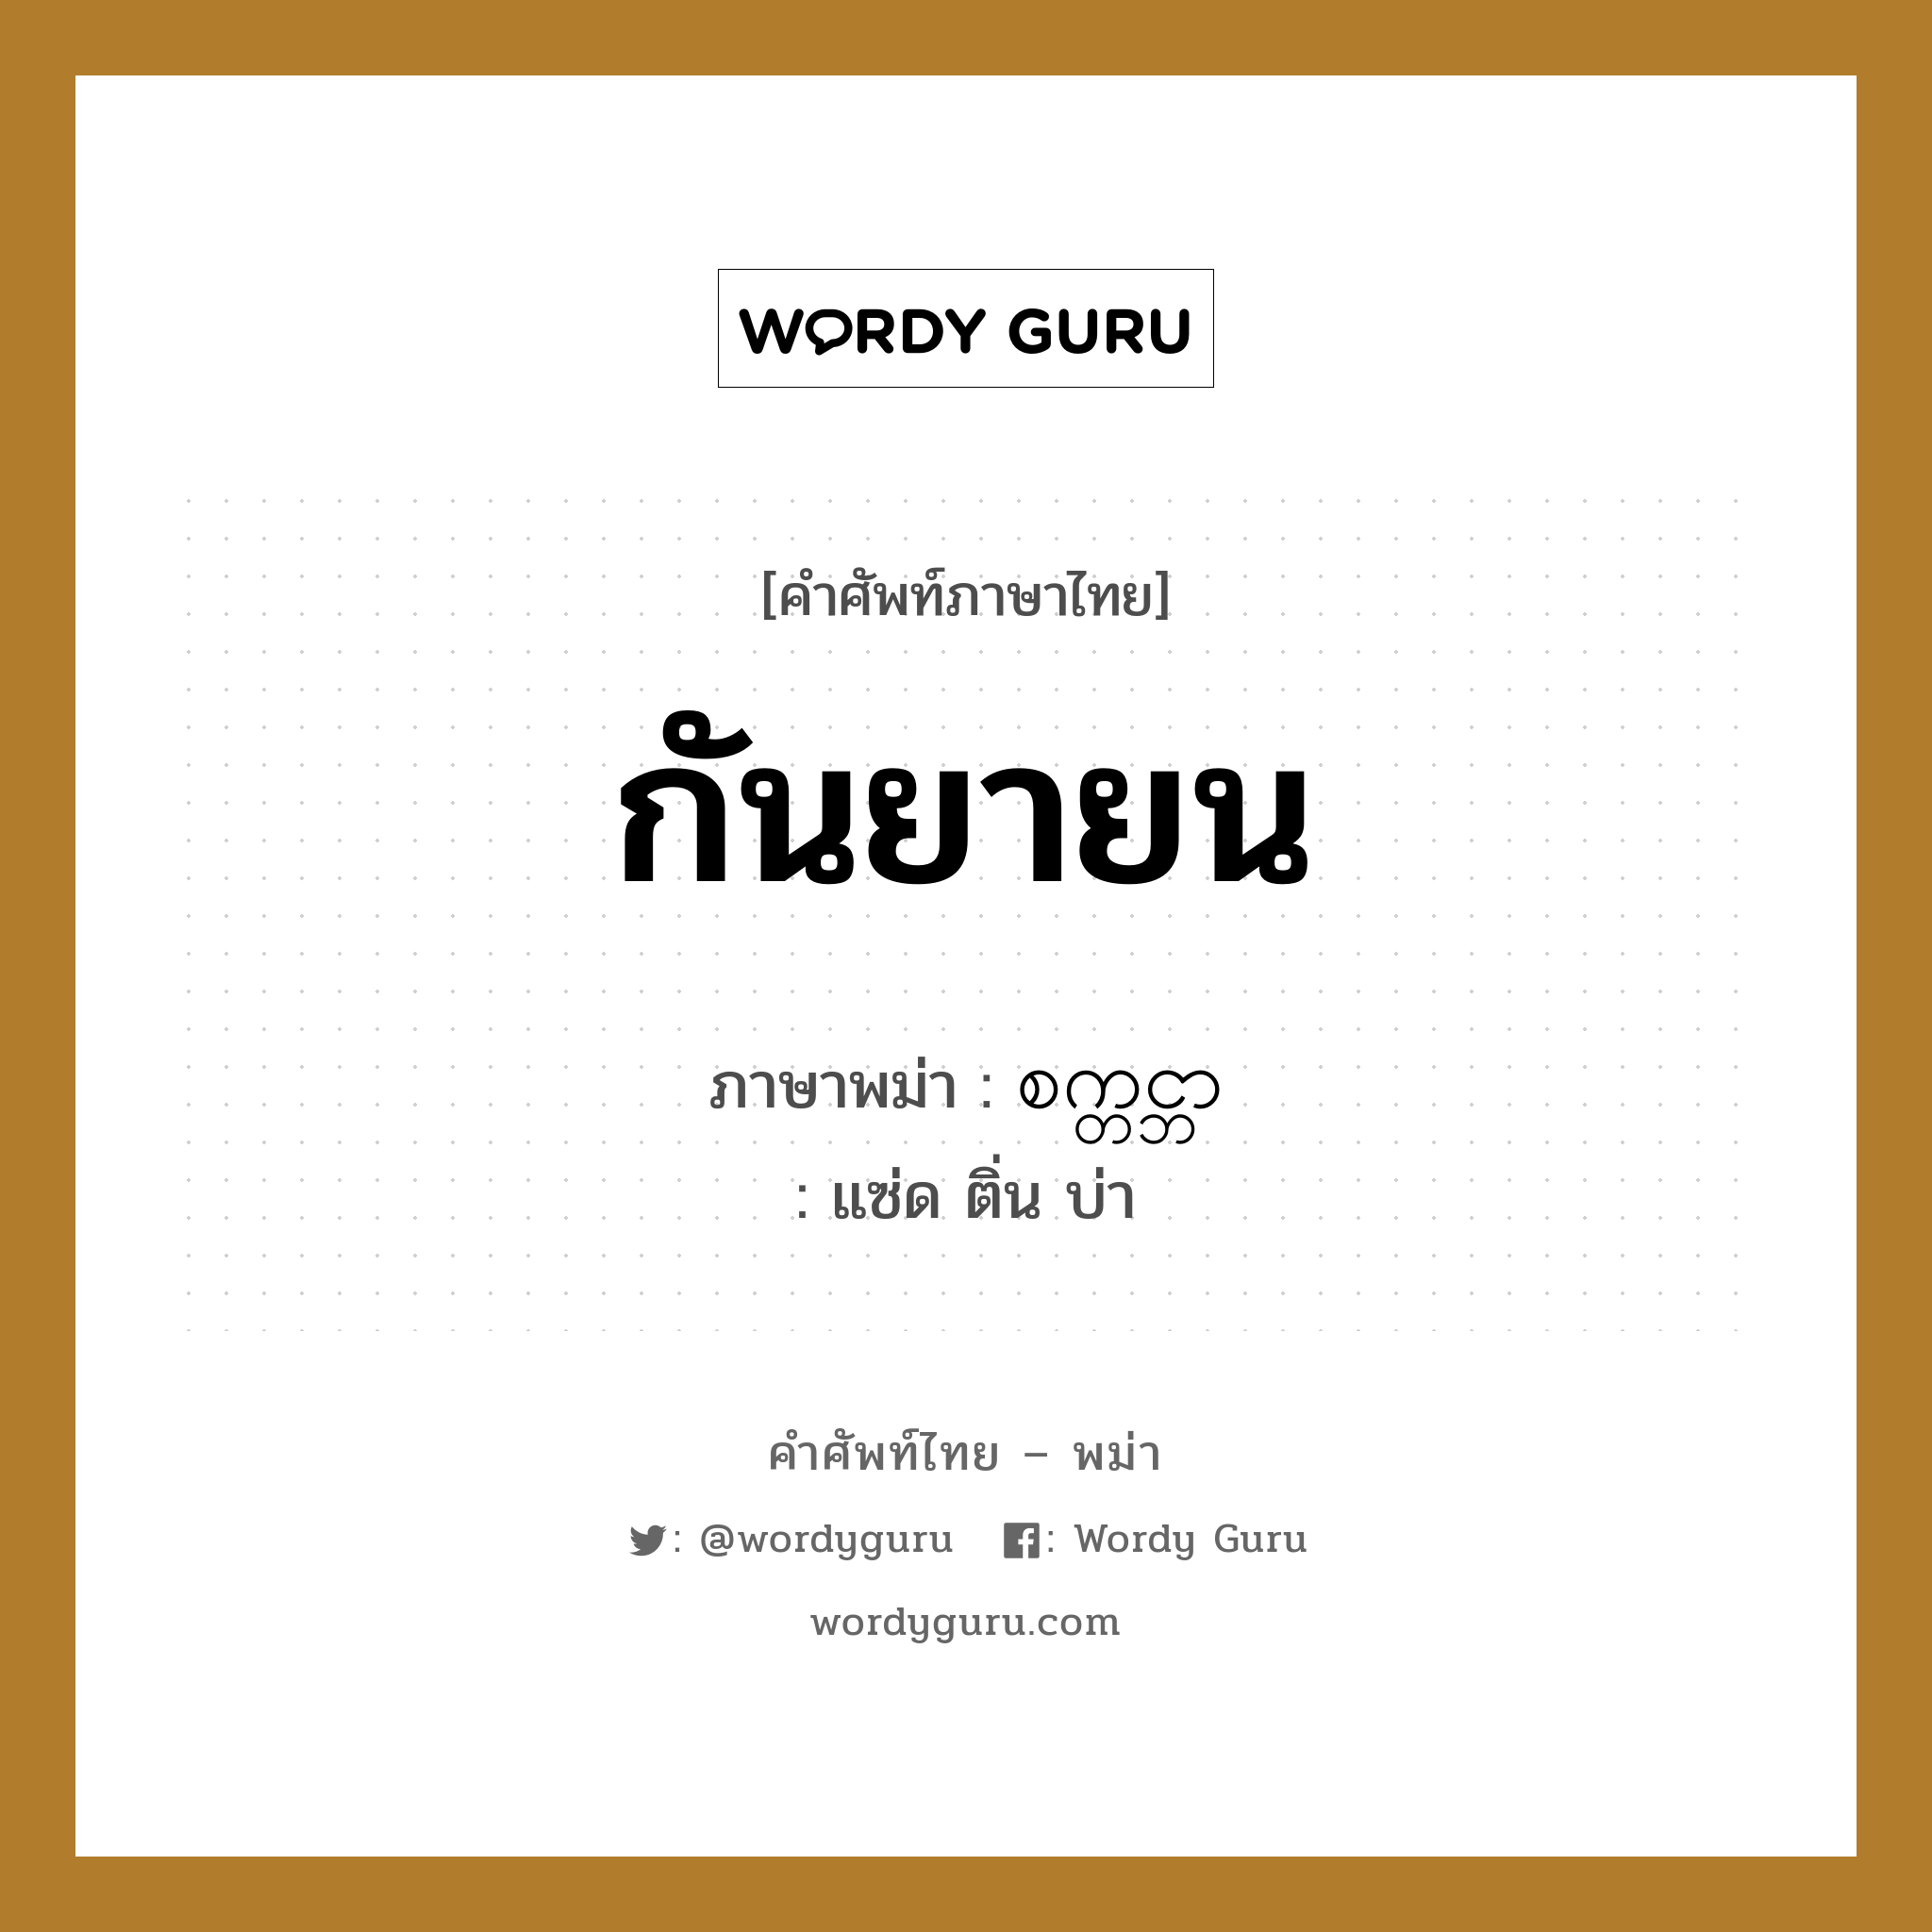 กันยายน ภาษาพม่าคืออะไร, คำศัพท์ภาษาไทย - พม่า กันยายน ภาษาพม่า စက္တင္ဘာ หมวด หมวดวัน เดือน ปี แซ่ด ติ่น บ่า หมวด หมวดวัน เดือน ปี